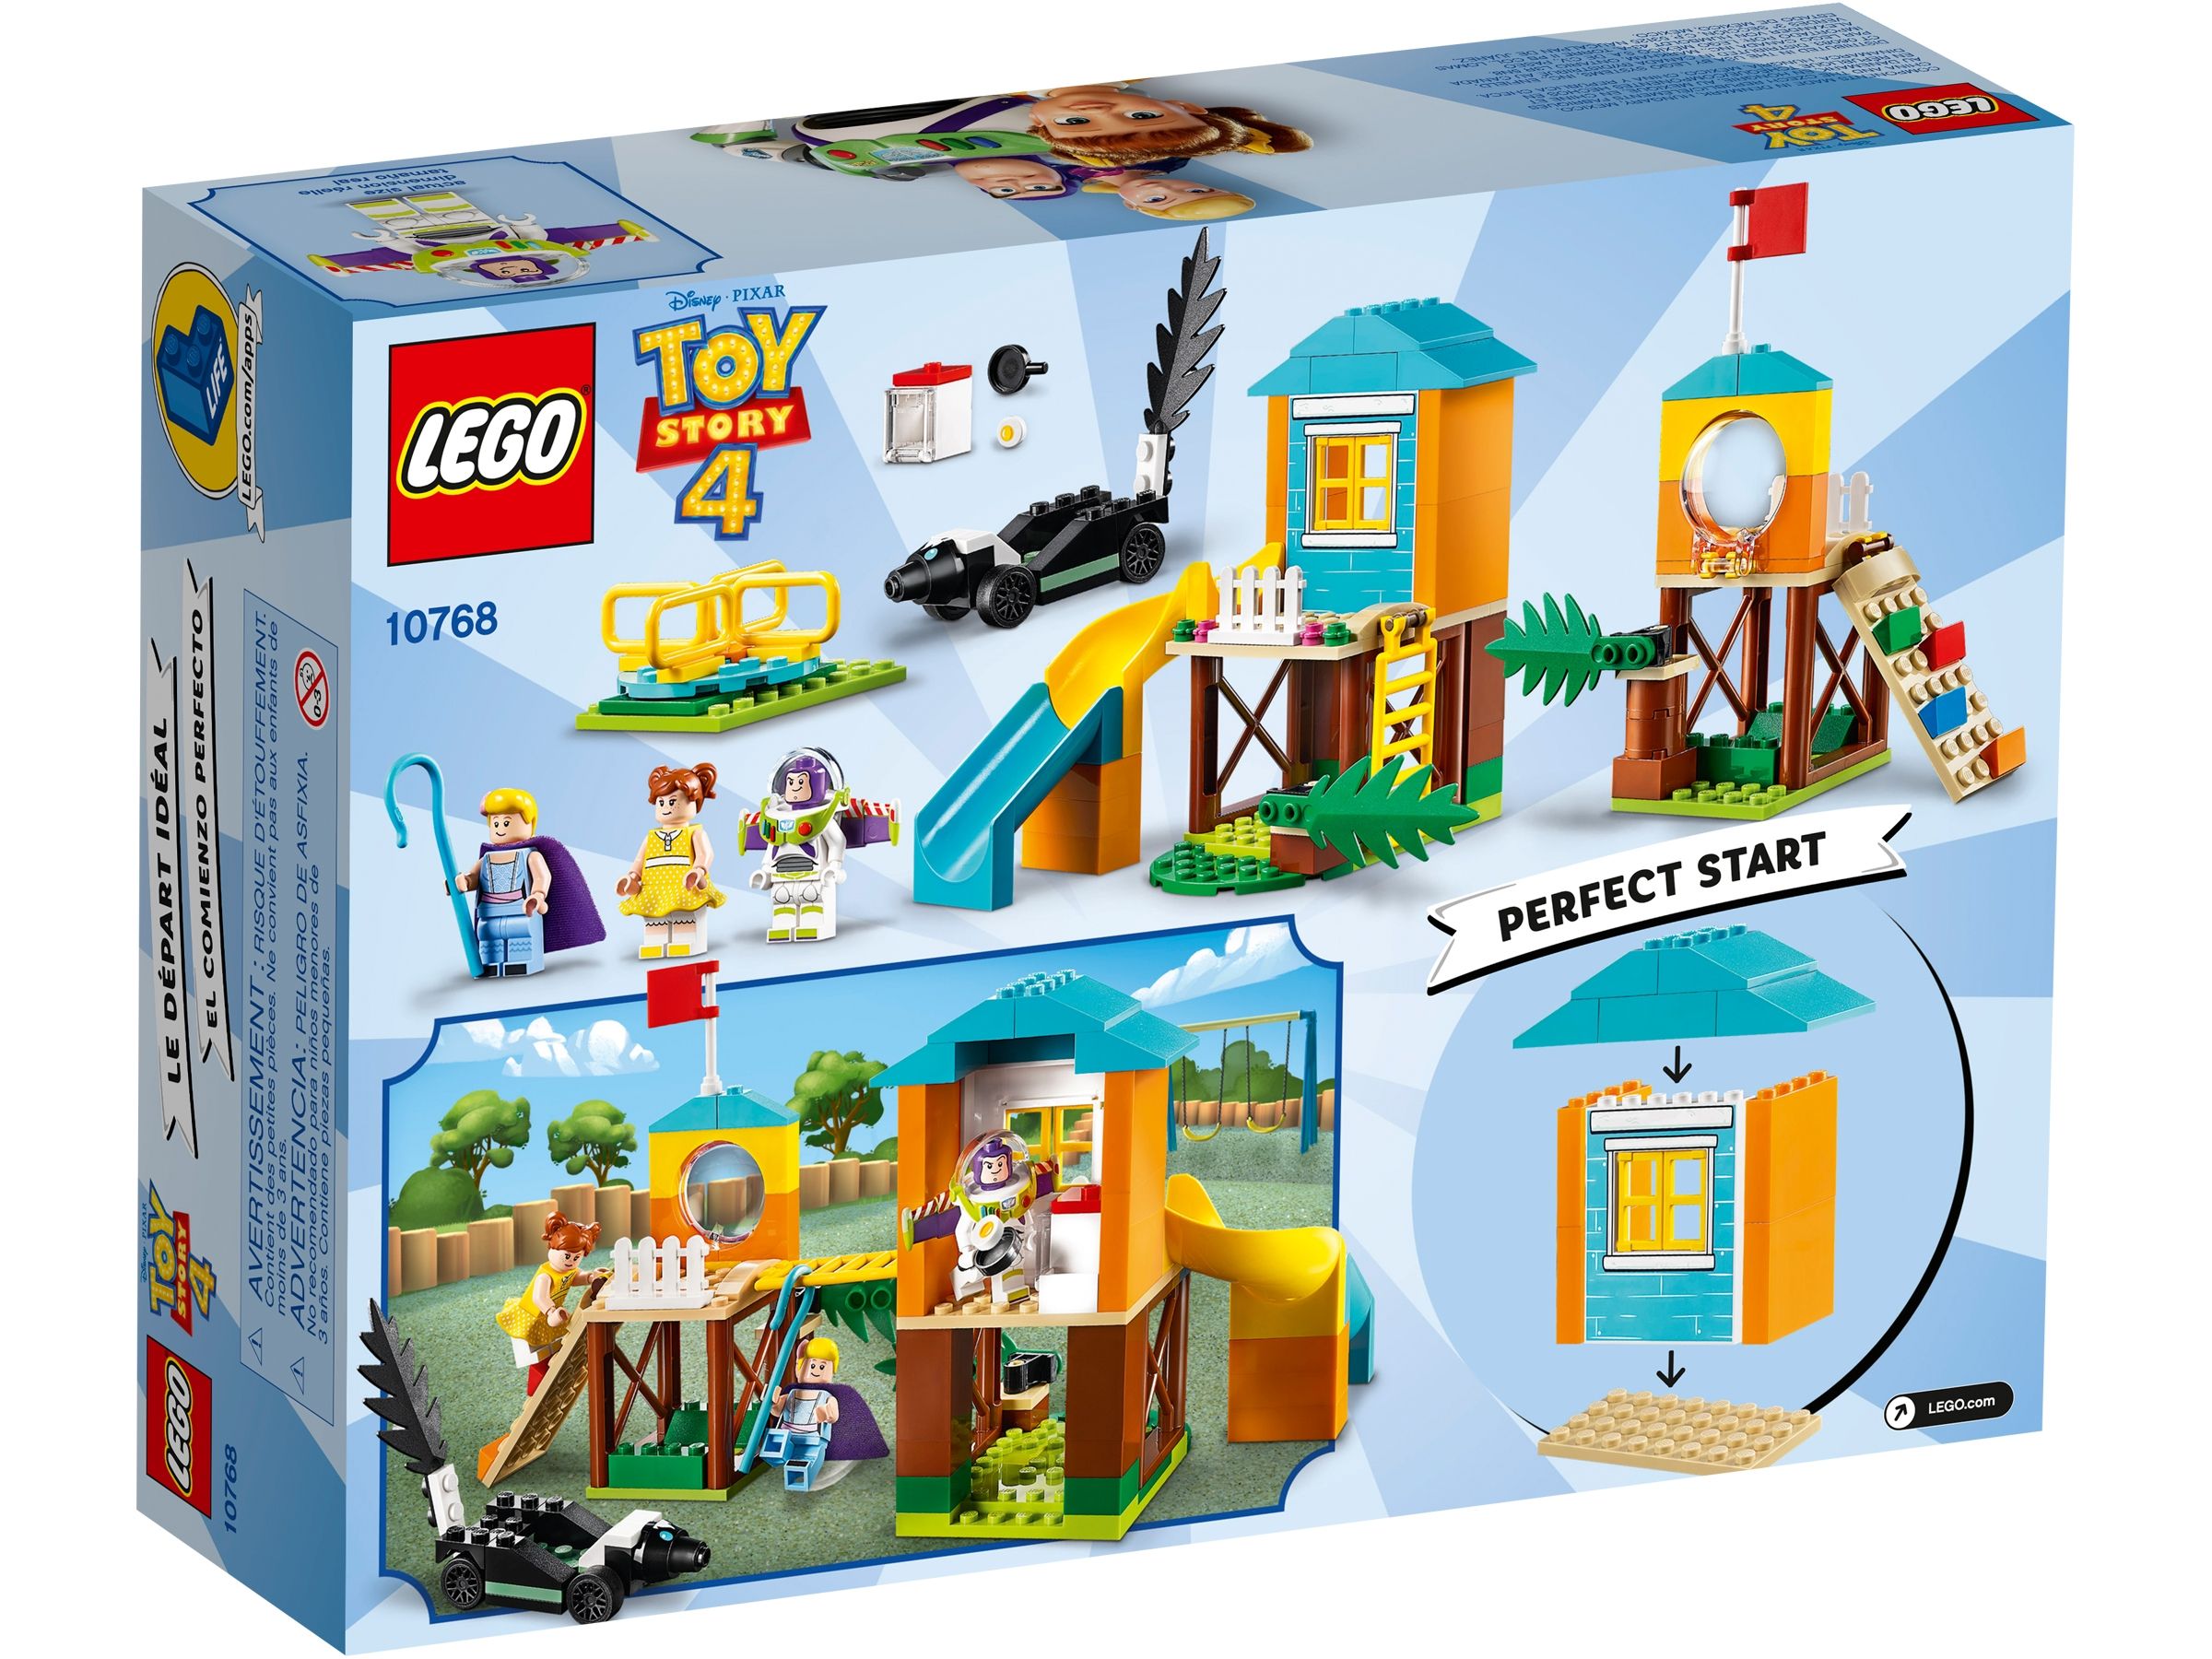 LEGO Toy Story 10768 Buzz & Porzellinchens Spielplatzabenteuer LEGO_10768_Box5_v39.jpg